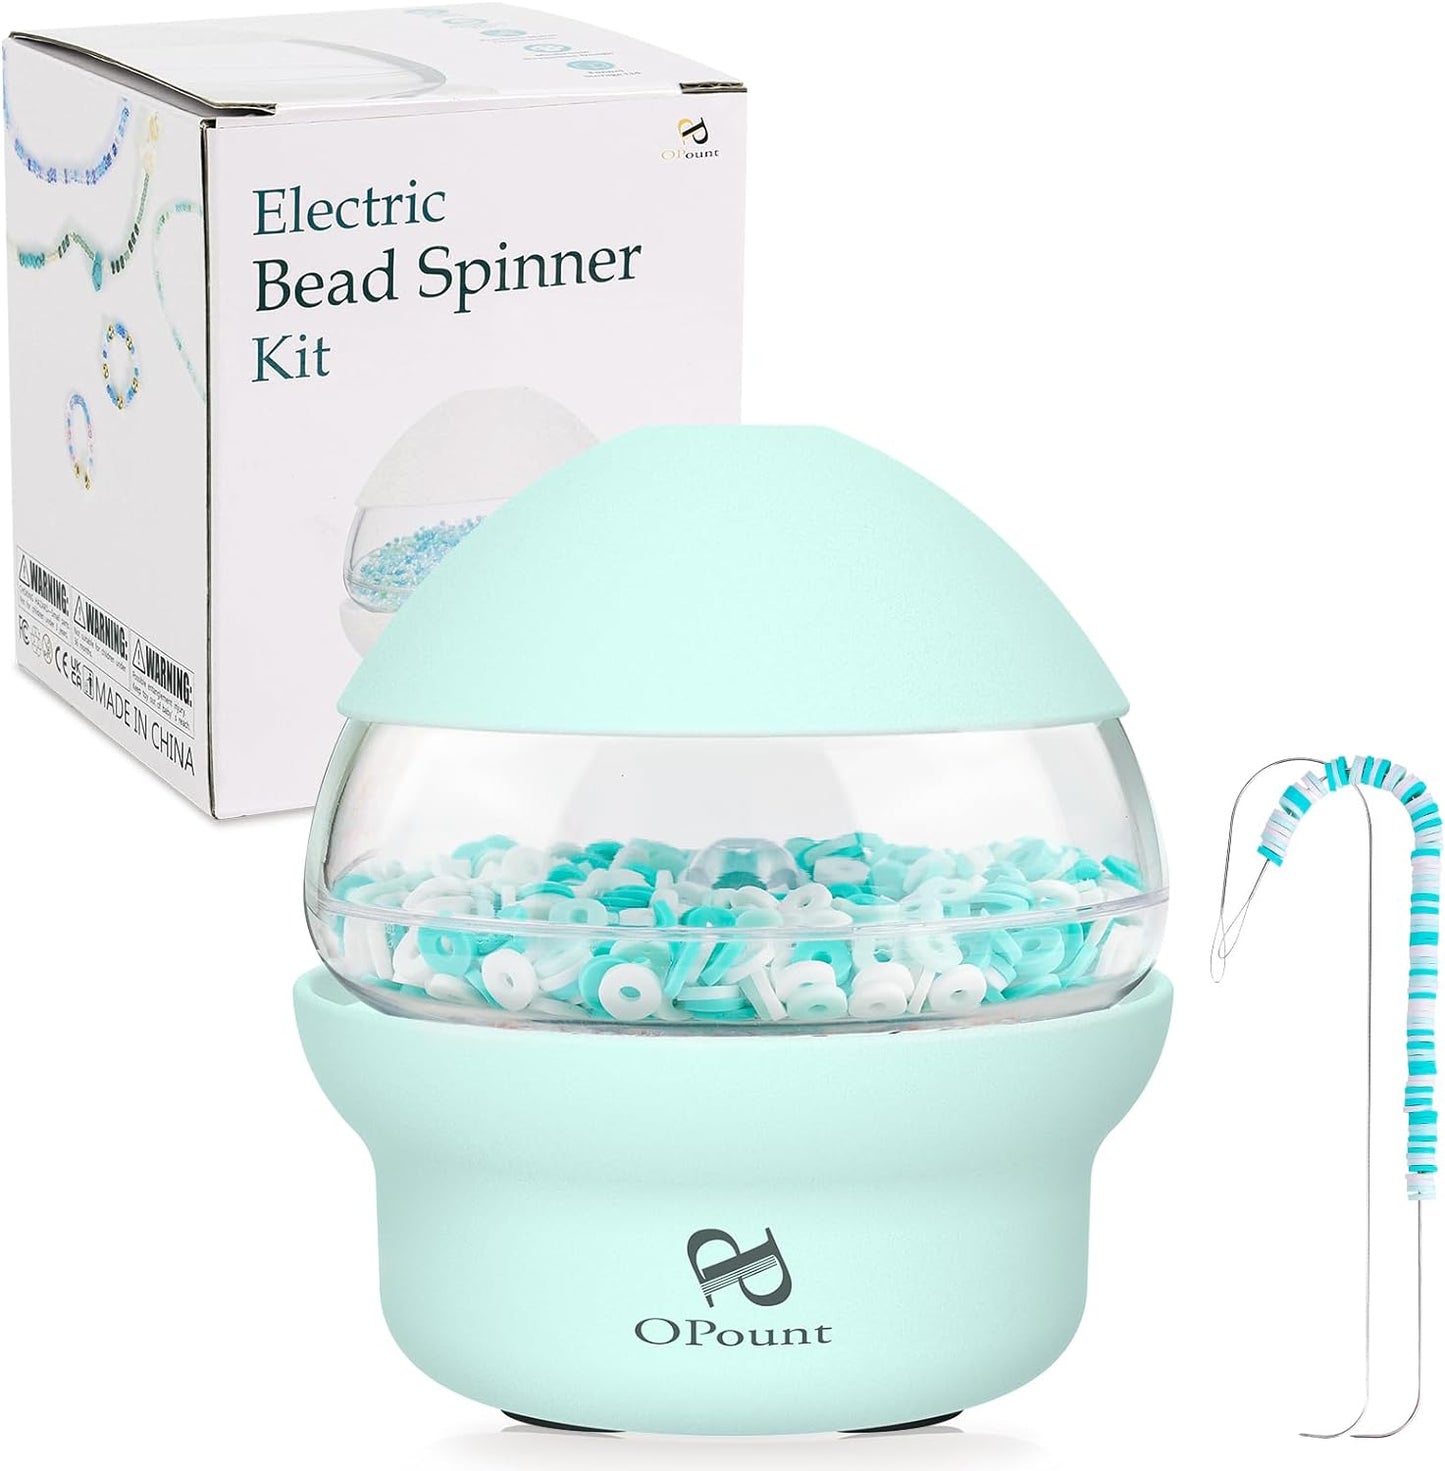 Bead Spinner kit